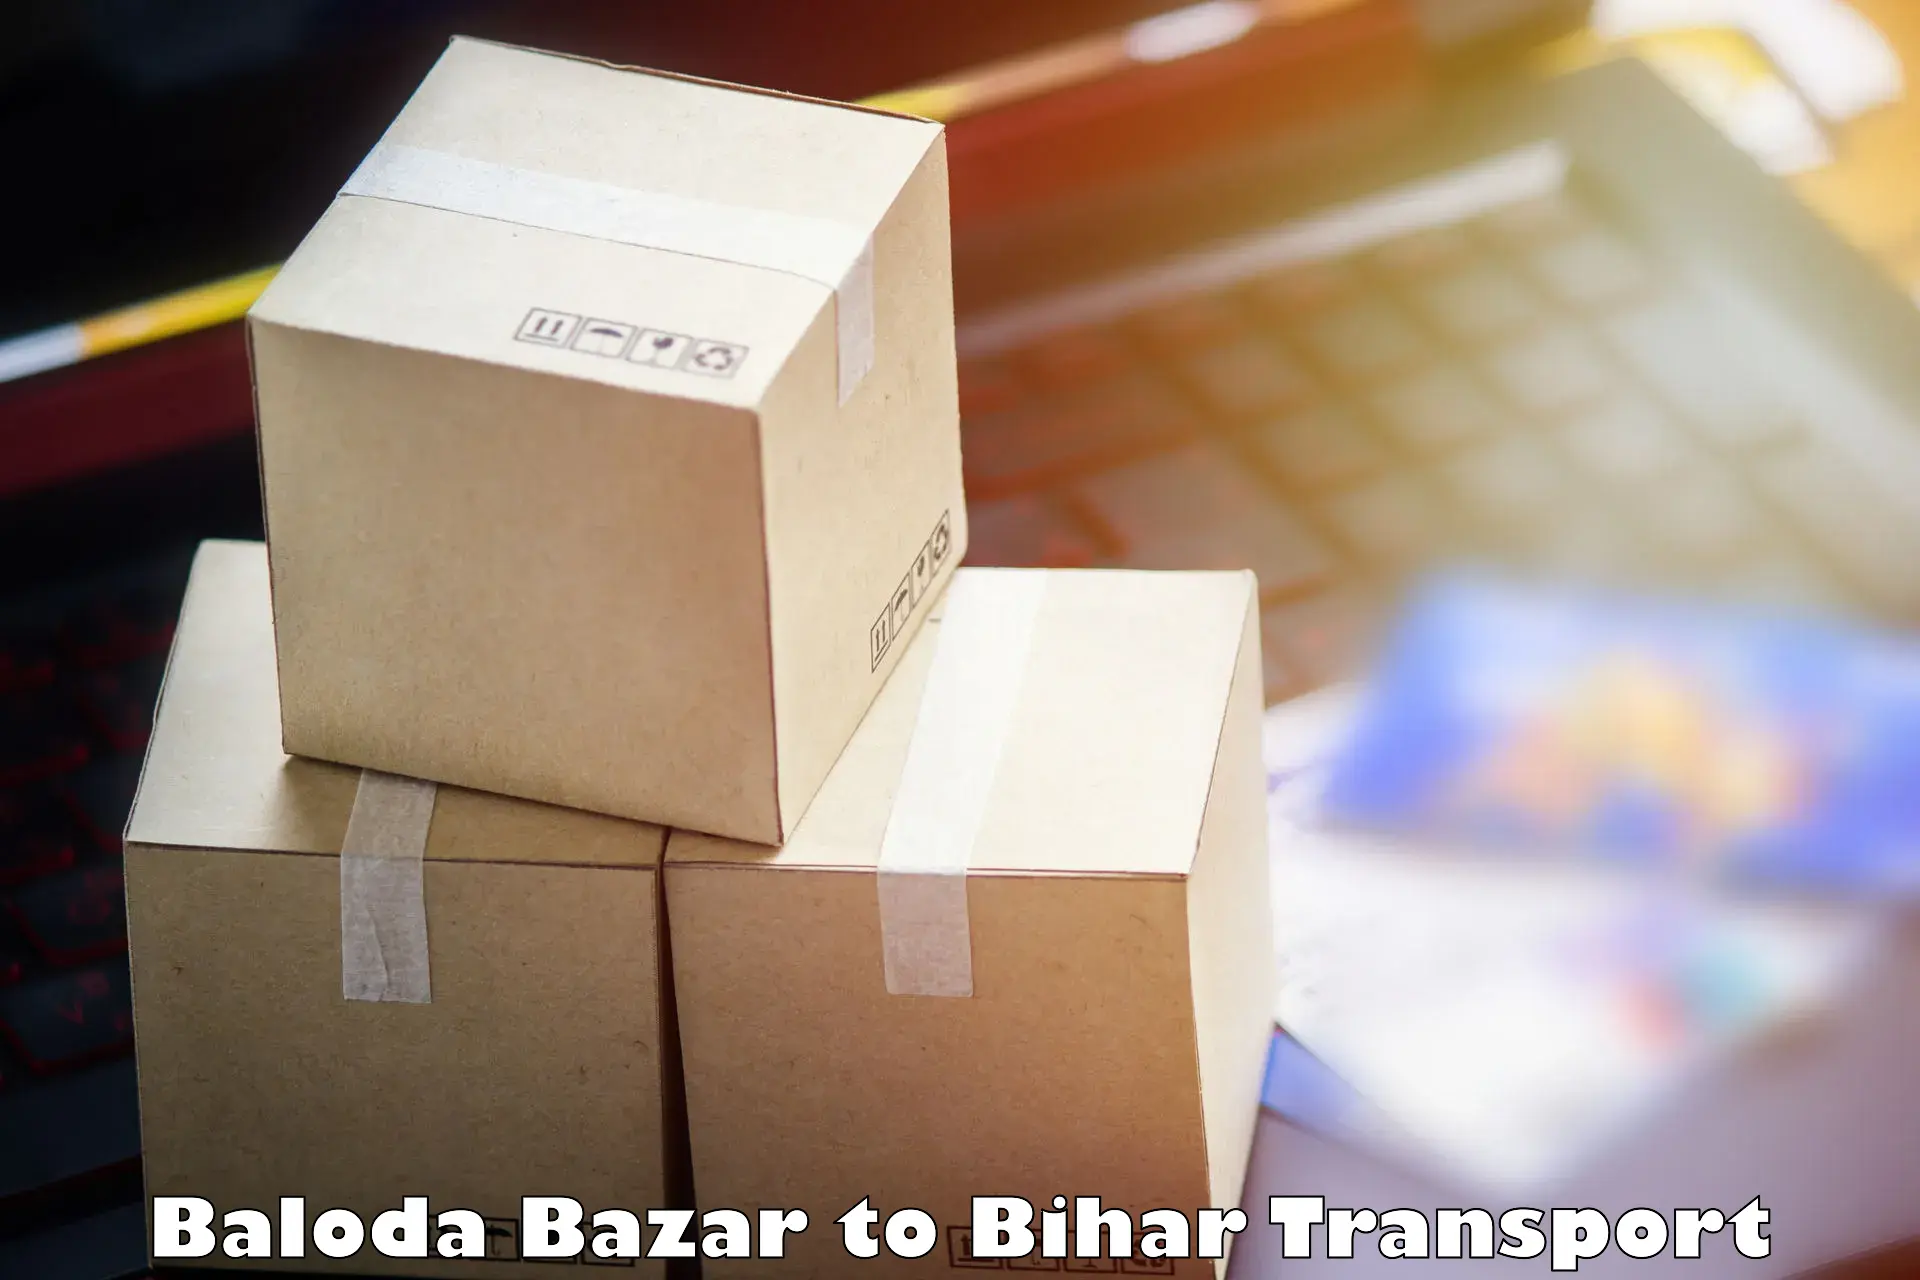 Nearest transport service Baloda Bazar to Mashrakh